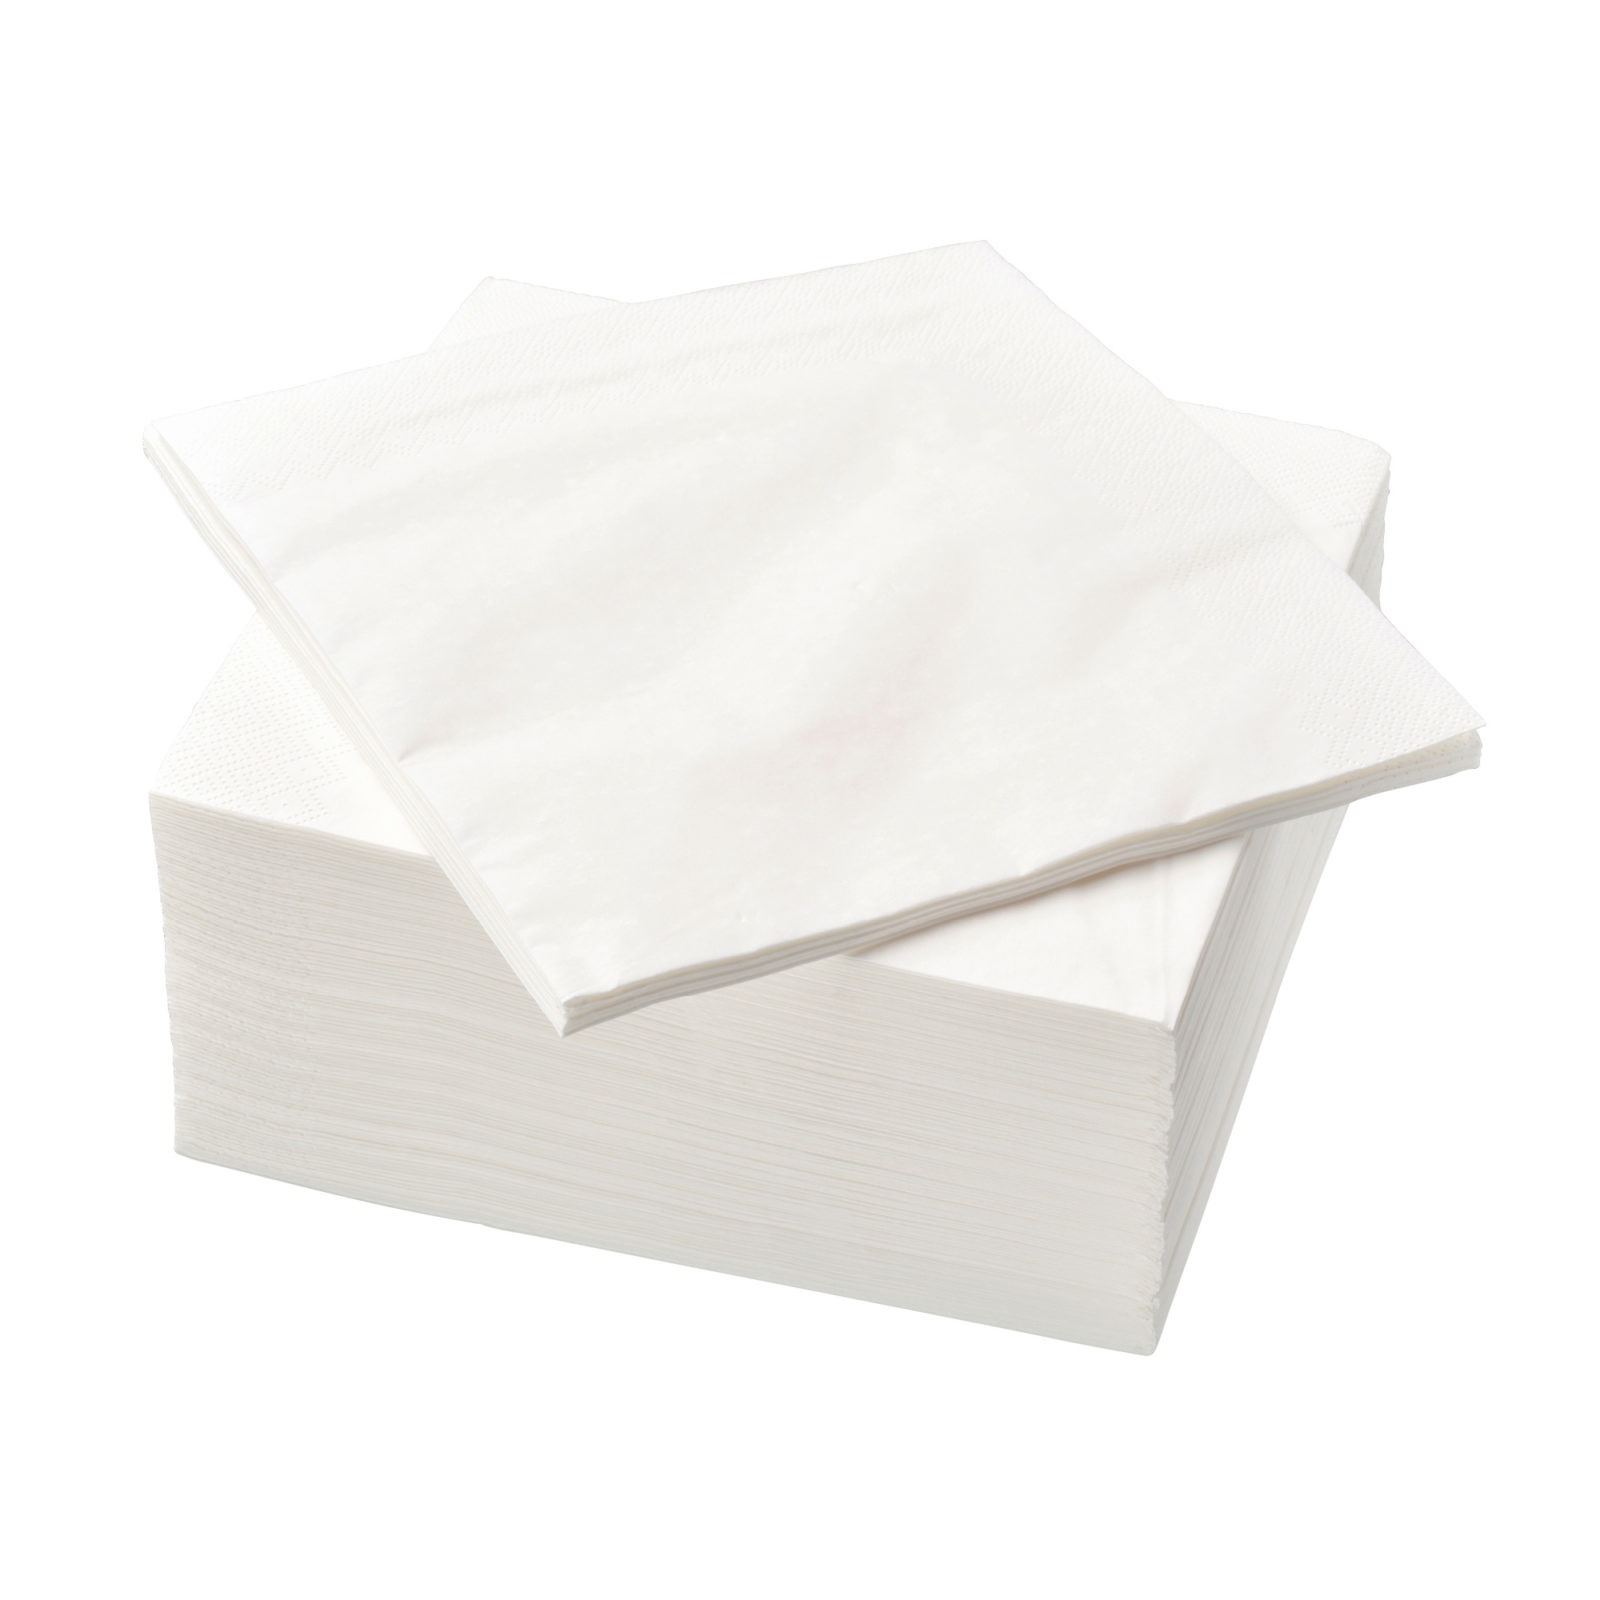 Ein Stapel weißer Papierservietten.